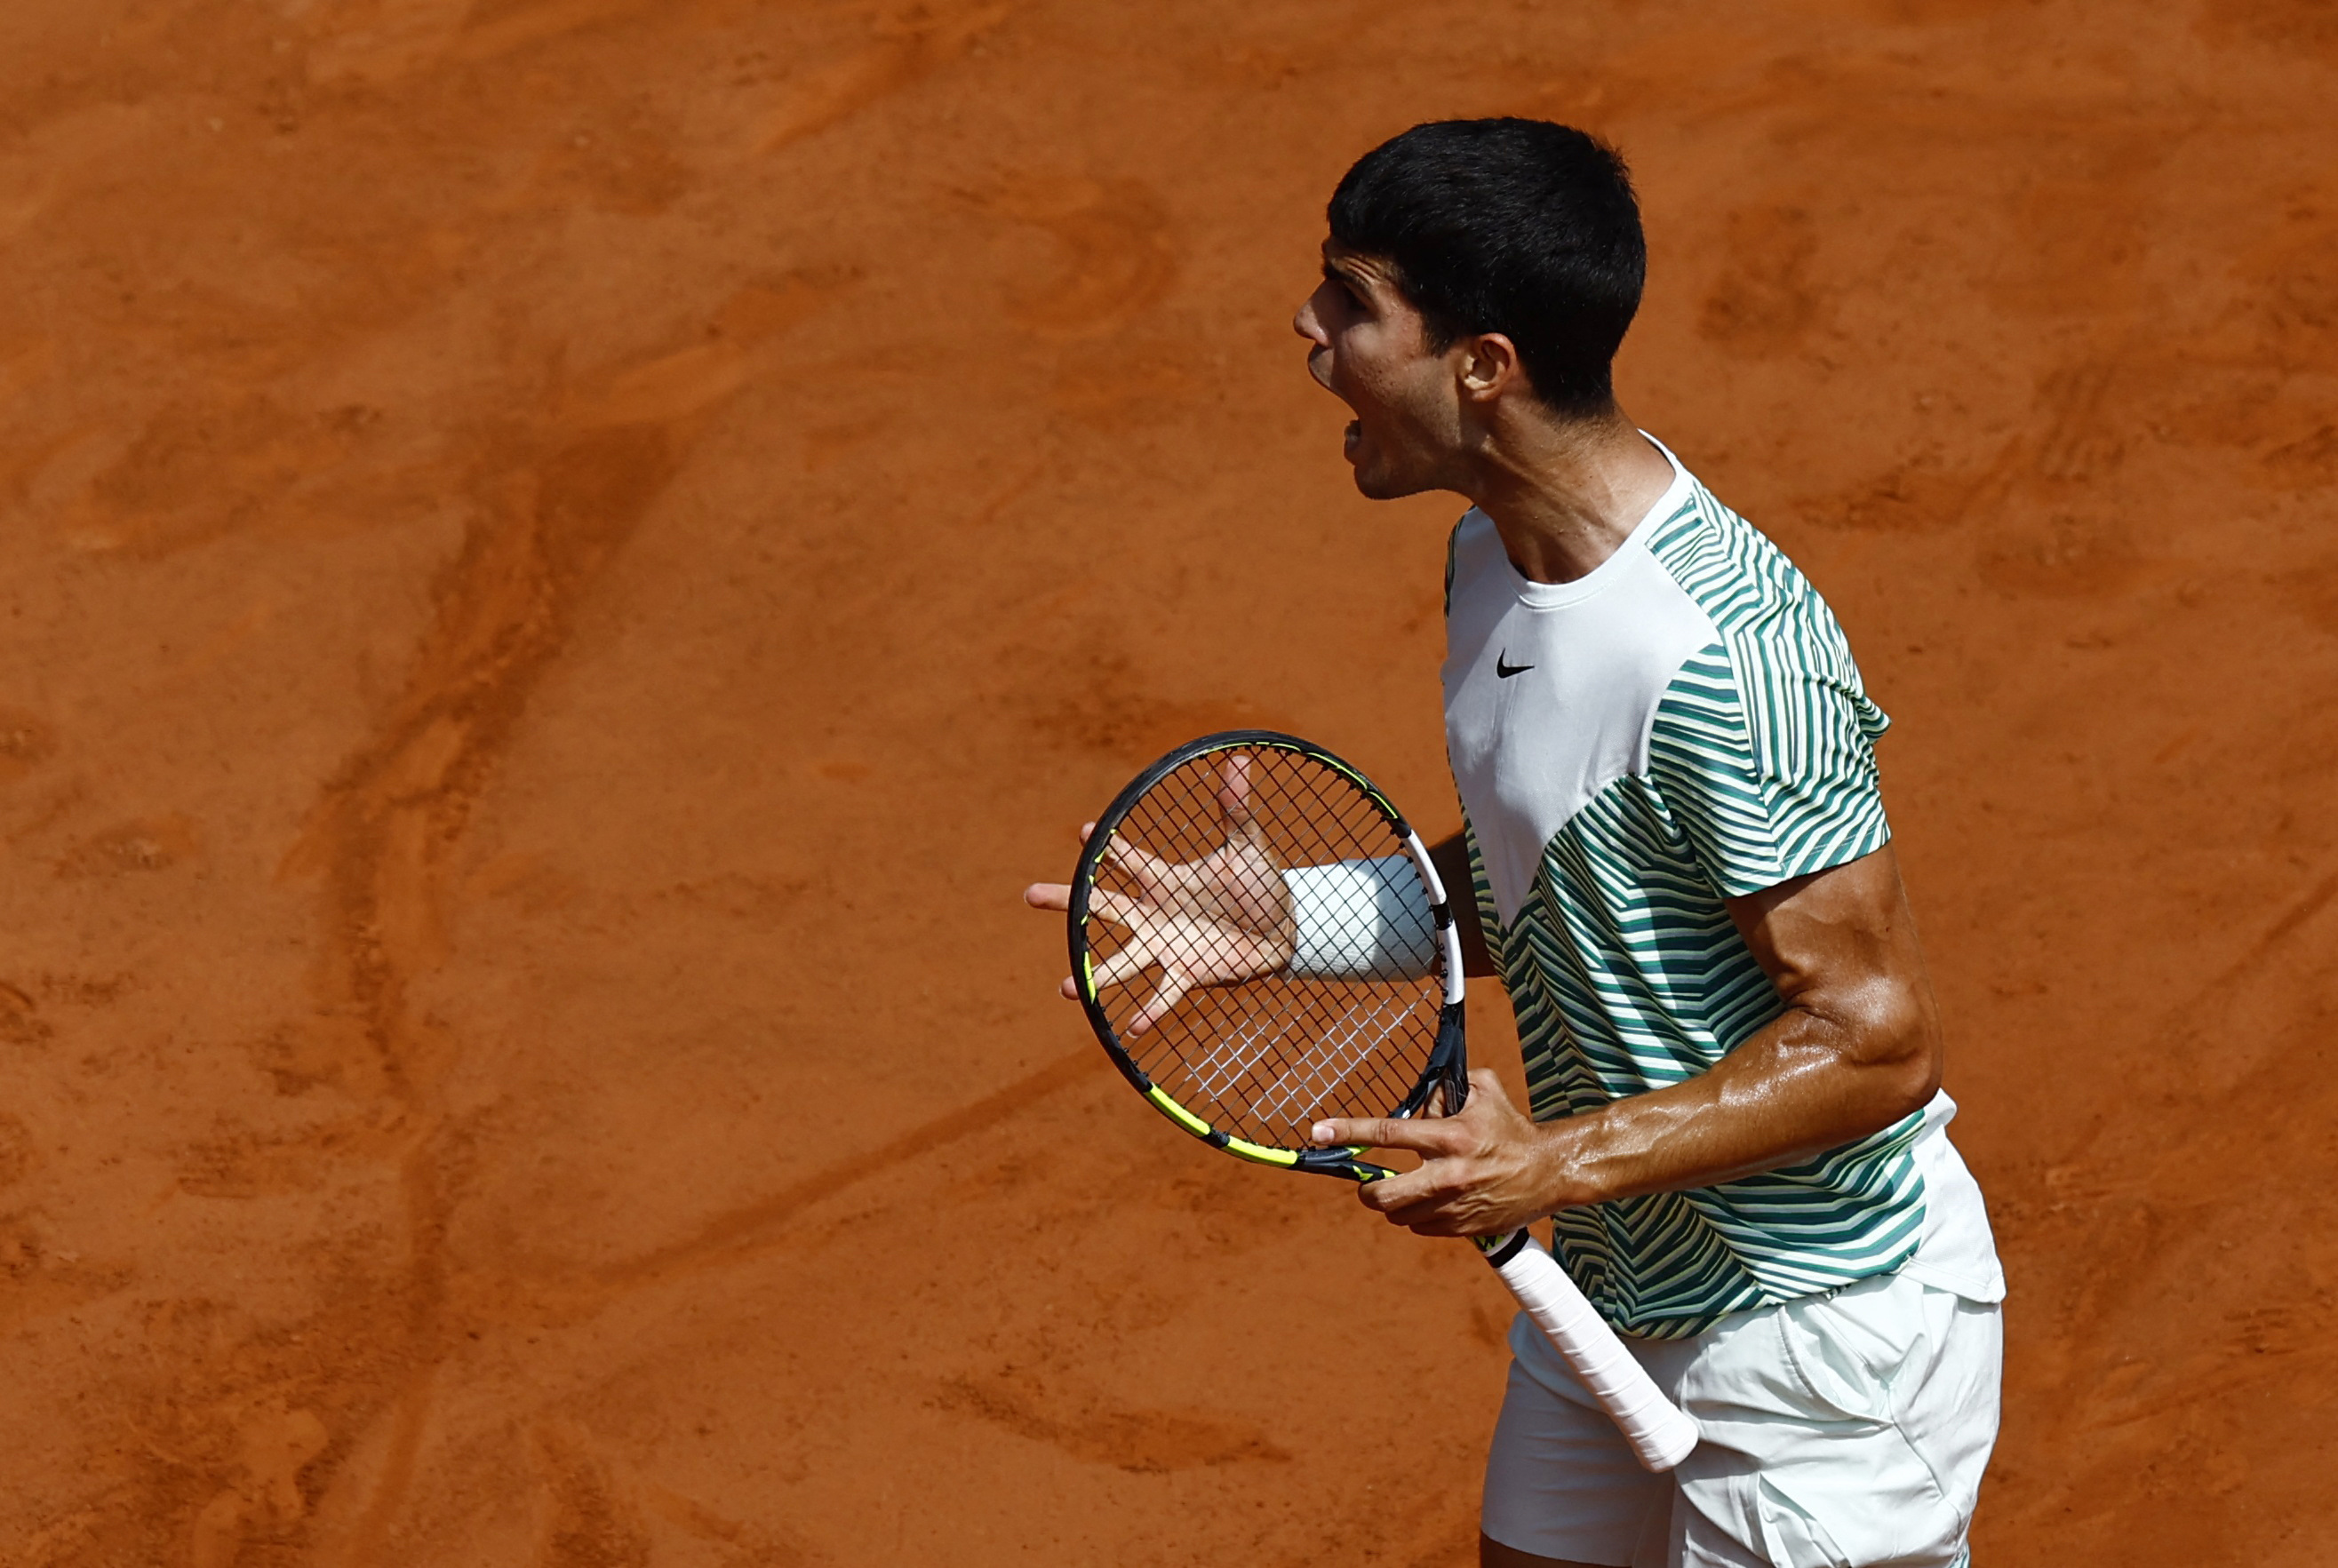 El puntazo de Alcaraz que provocó el aplauso de Djokovic: uno de los mejores momentos de Roland Garros 